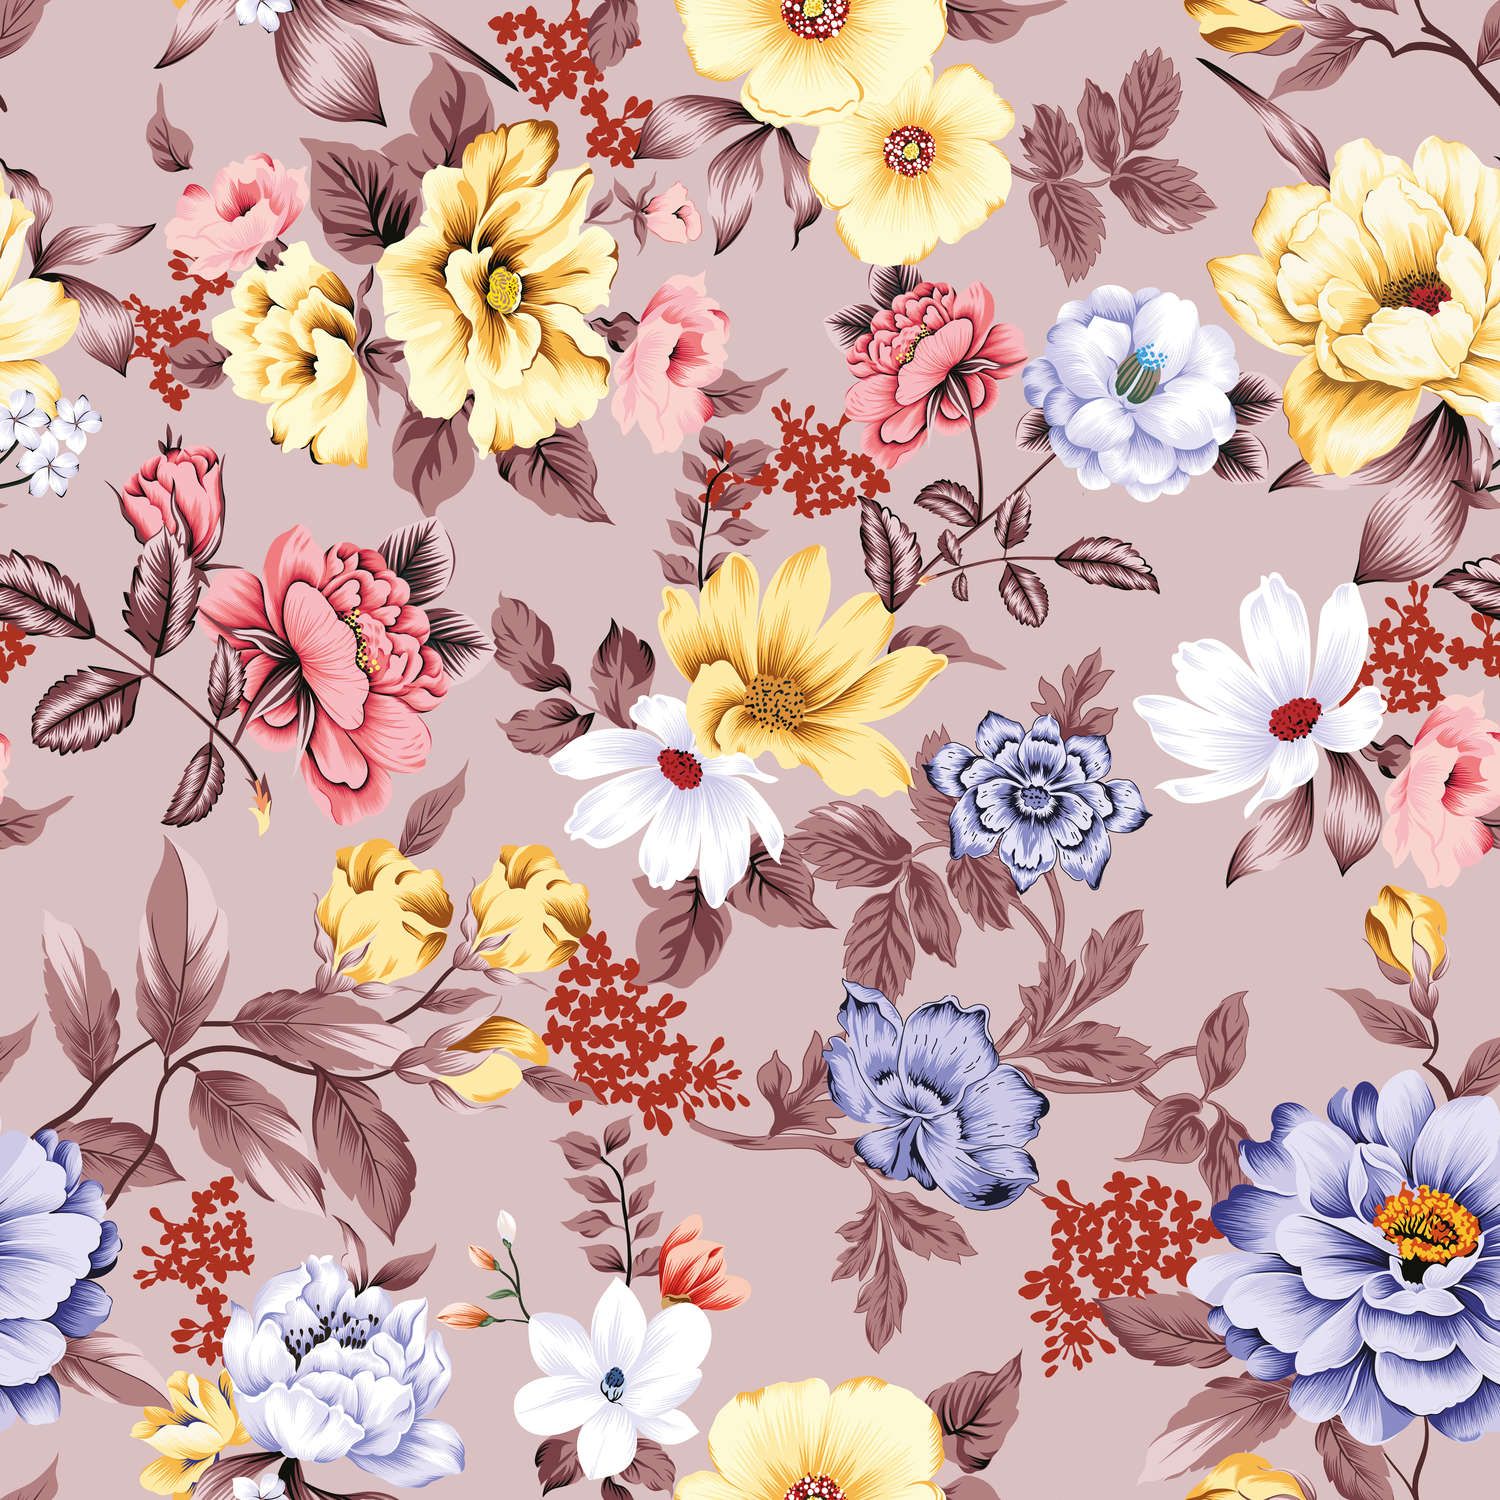             Fototapete floral mit Blüten und Blättern – Glattes & mattes Vlies
        